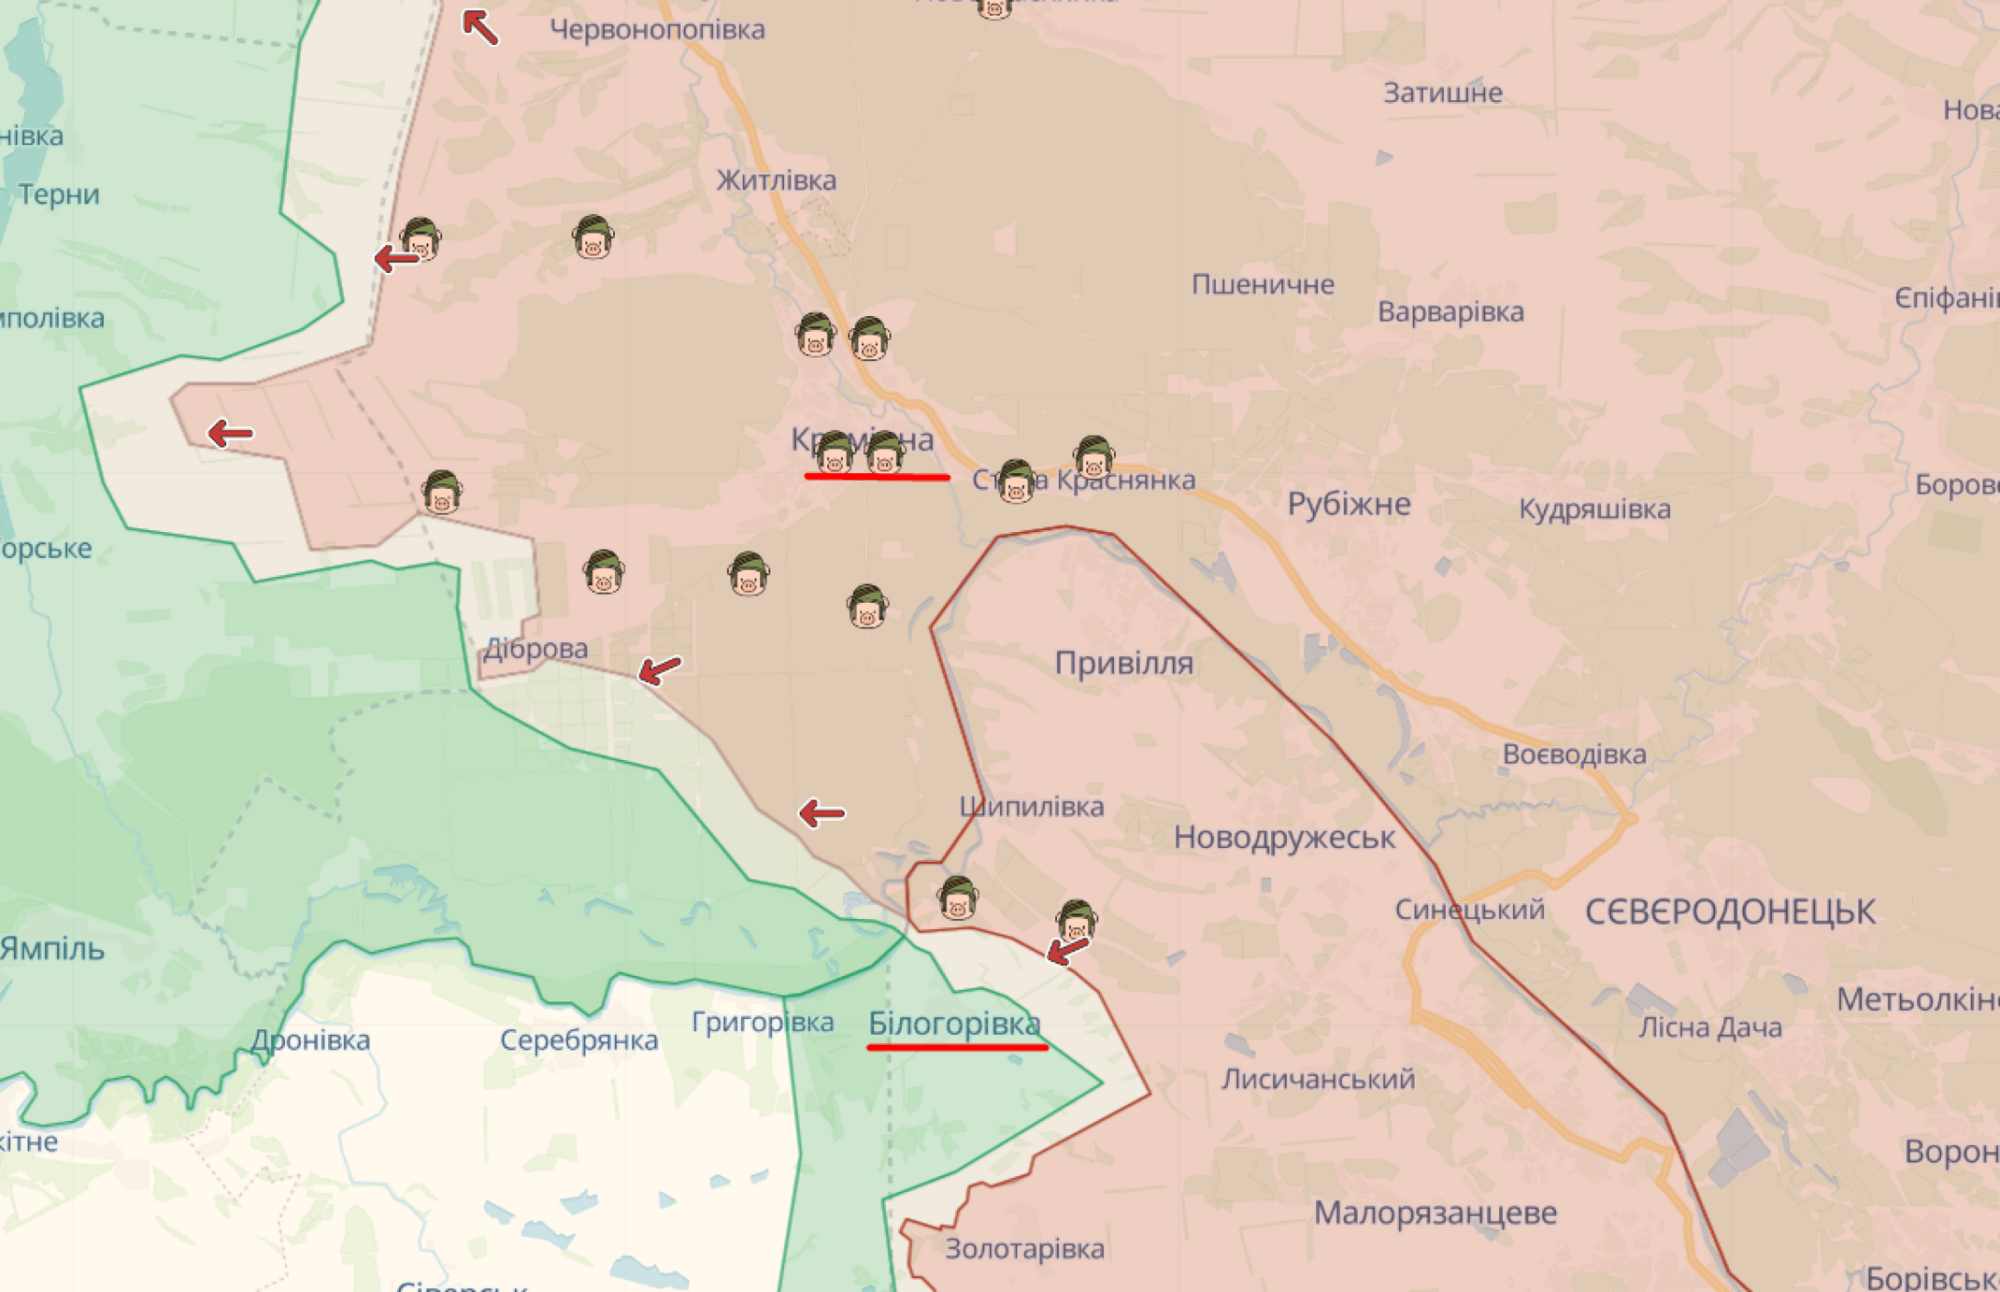 ЗС рф атакують за підтримки авіації: у Луганській області потужне загострення, – Гайдай